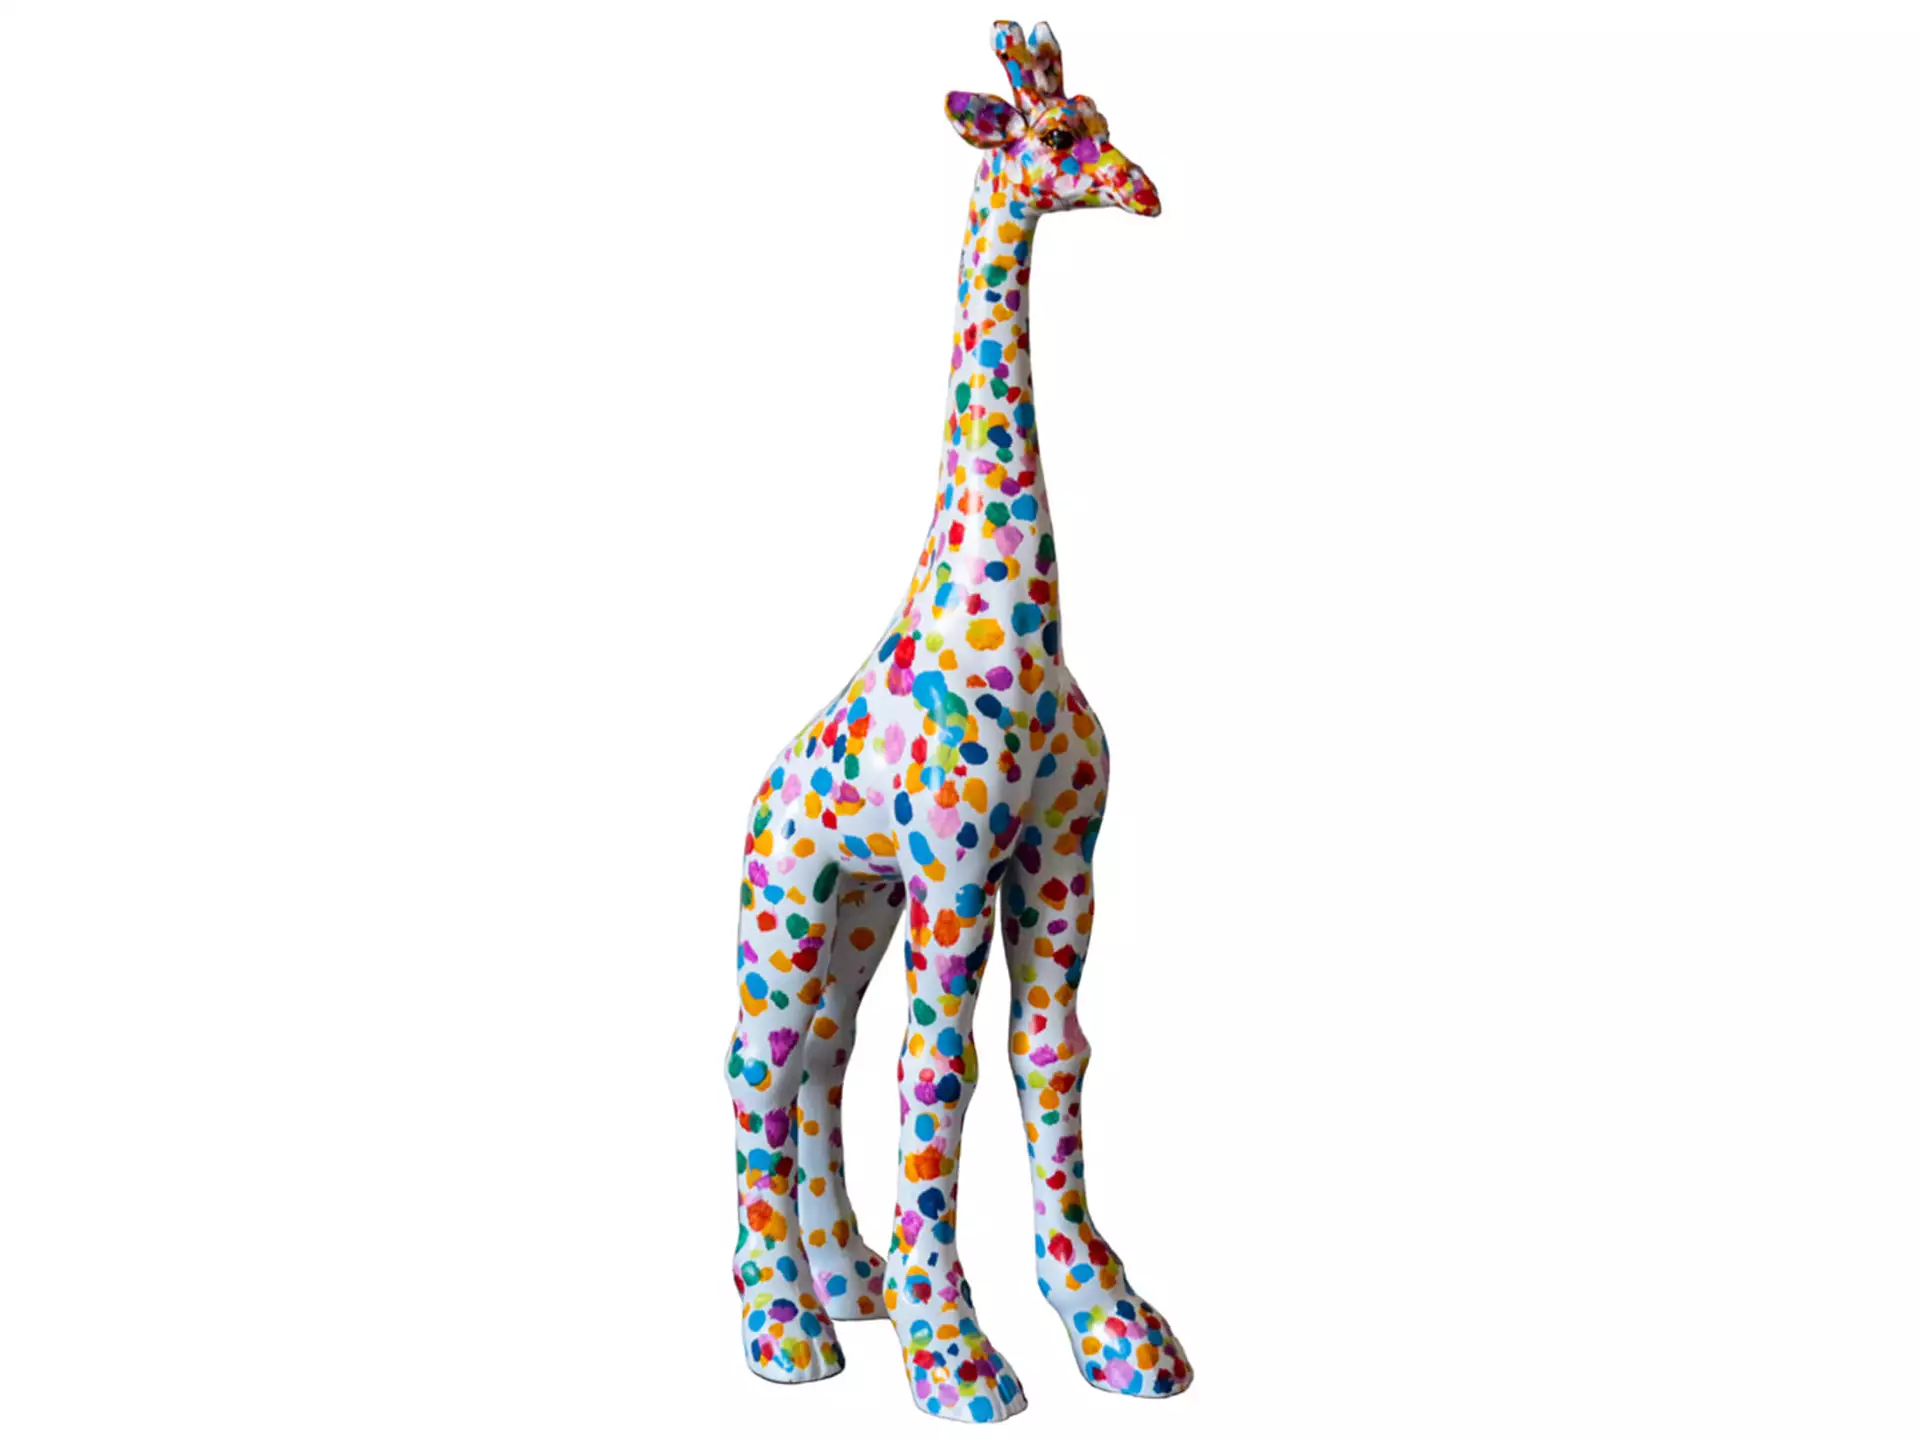 Skulptur Giraffe image LAND